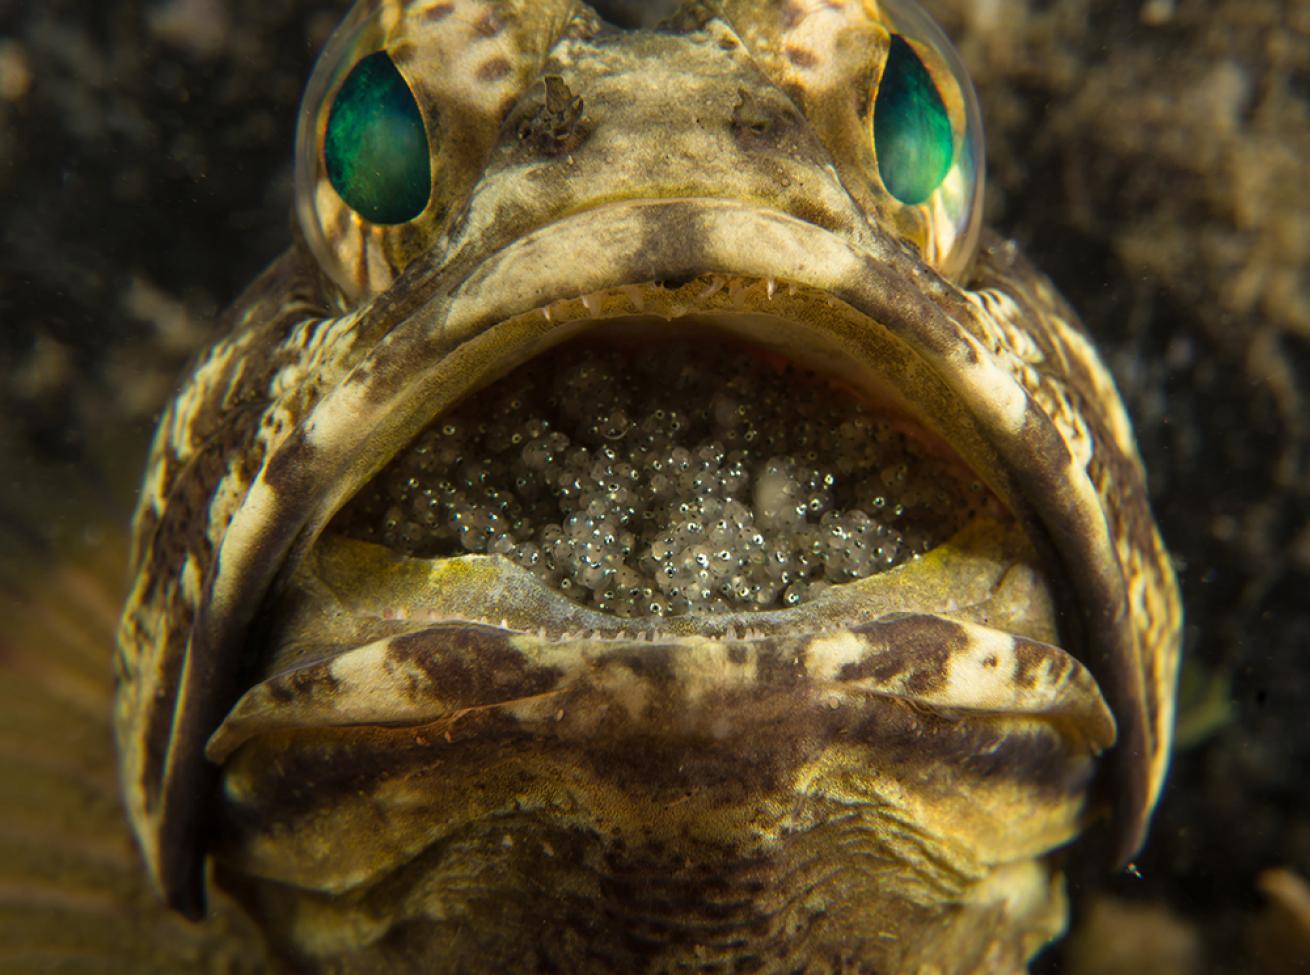 jawfish mouthbrooding